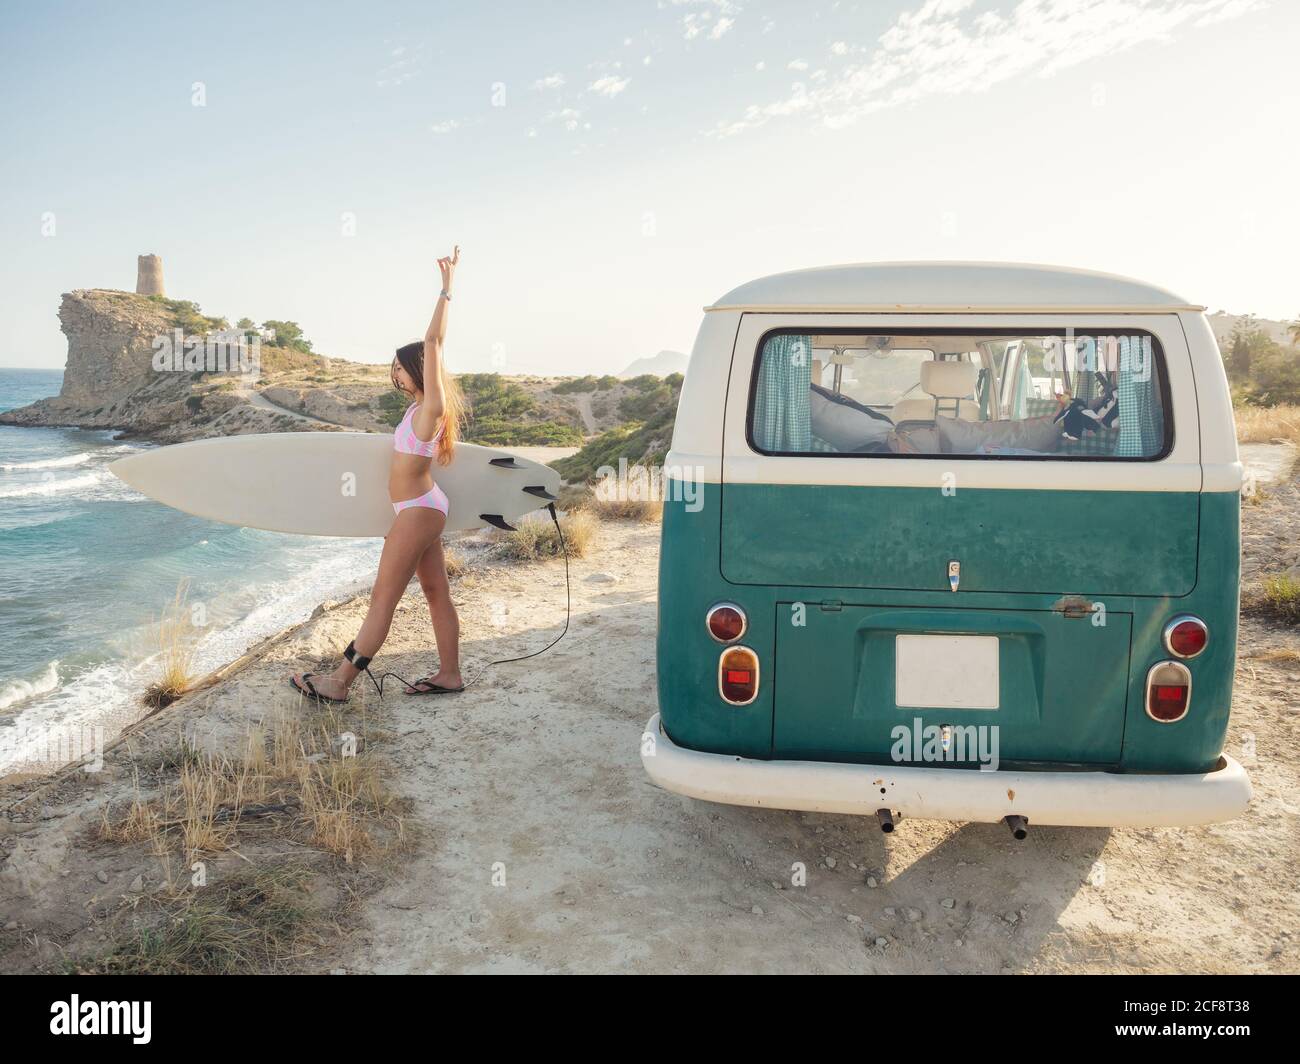 Encantadora mujer de pelo largo que va a surfear sosteniendo una tabla de surf cerca de una furgoneta clásica Foto de stock